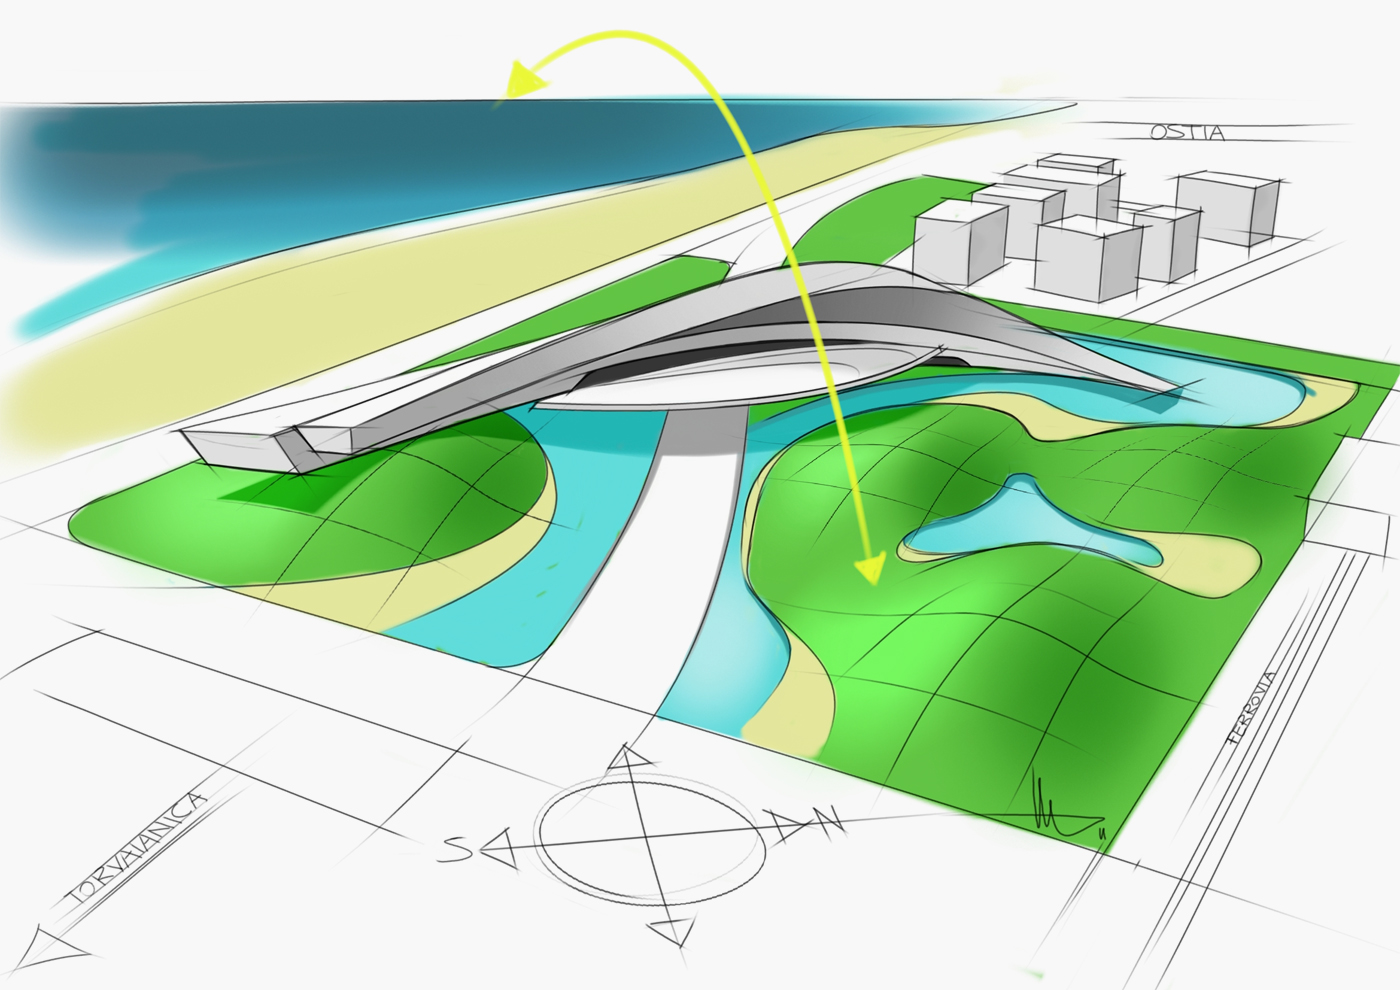 Architecture - Waterfront Rome - Concept sketch 01 -Davide Mezzasalma - Furniture design - Berlin